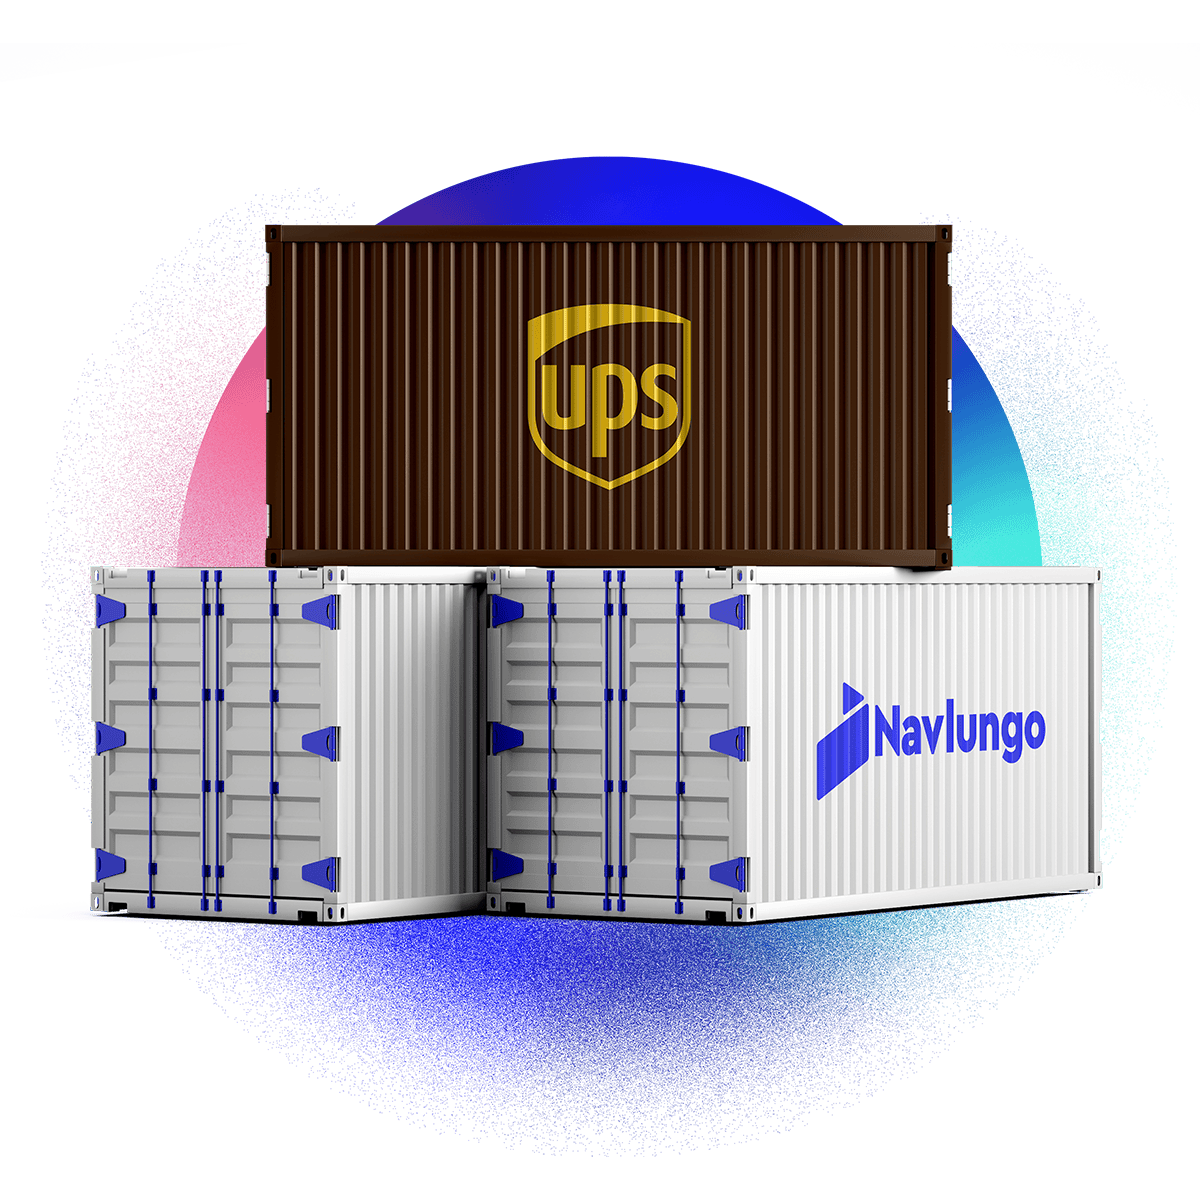 Navlungo'dan Sorunsuz UPS Kargo Servisi